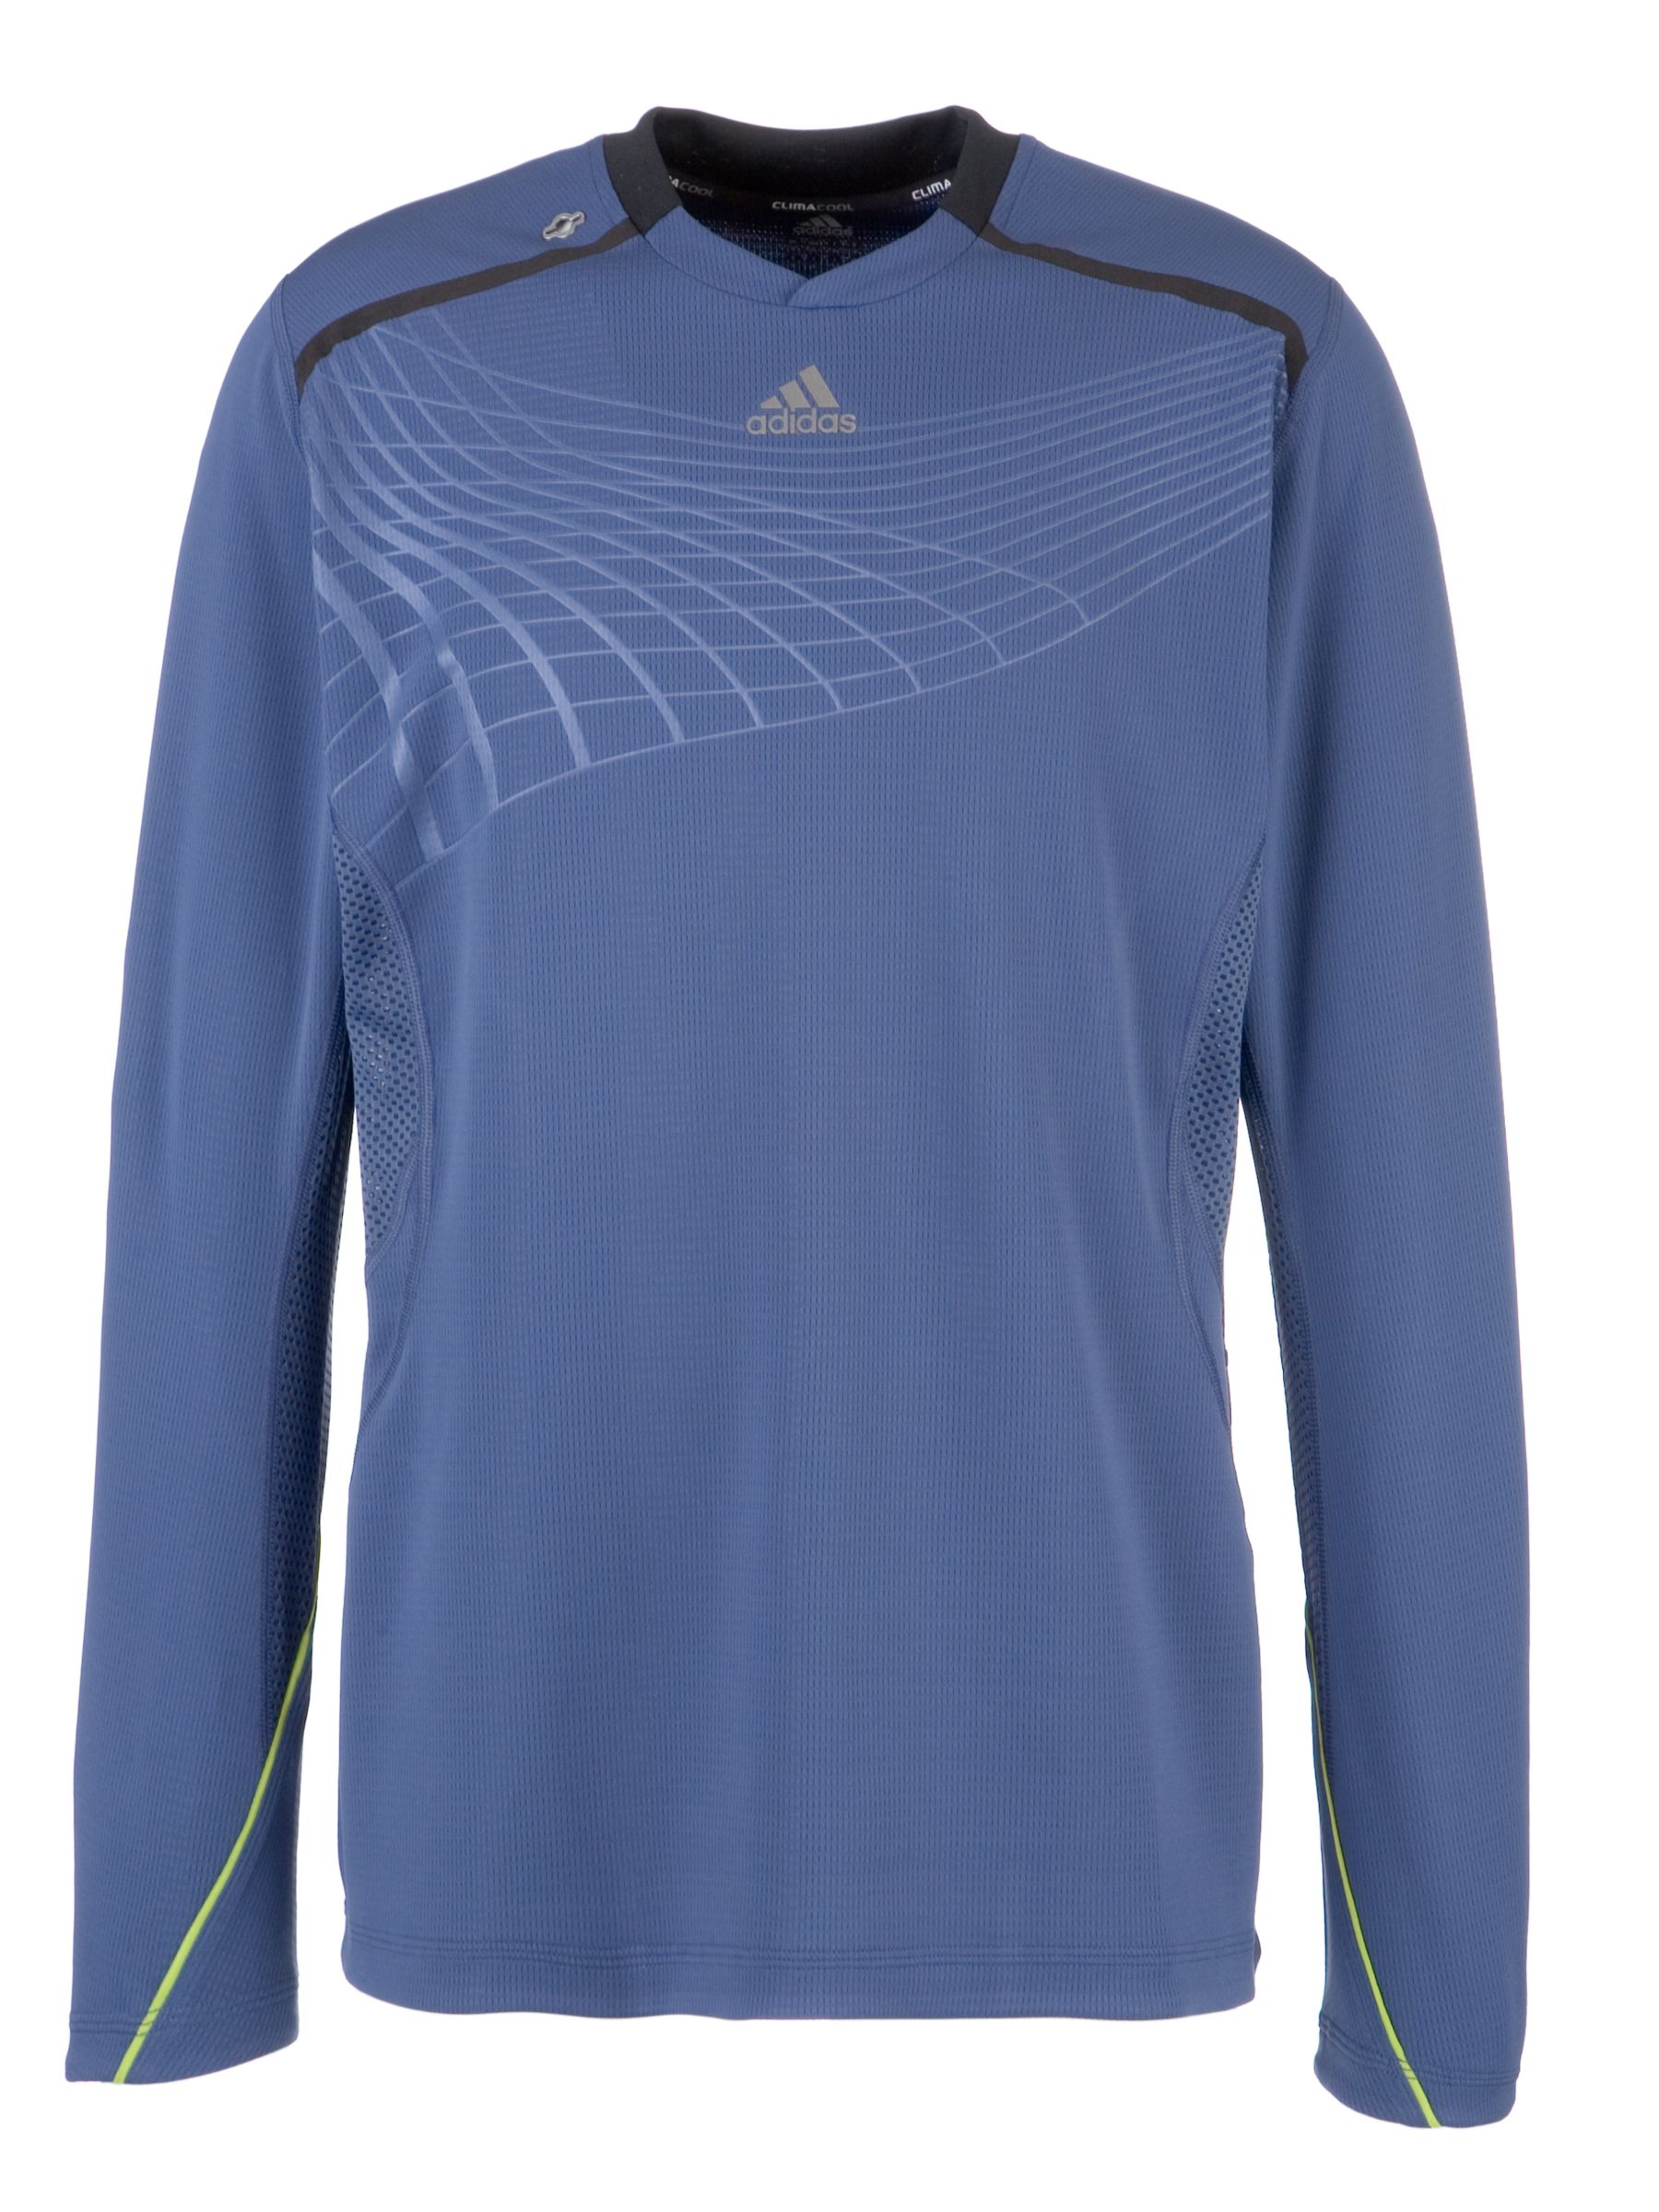 Adidas Adistar Long Sleeve T-Shirt, Navy/Green